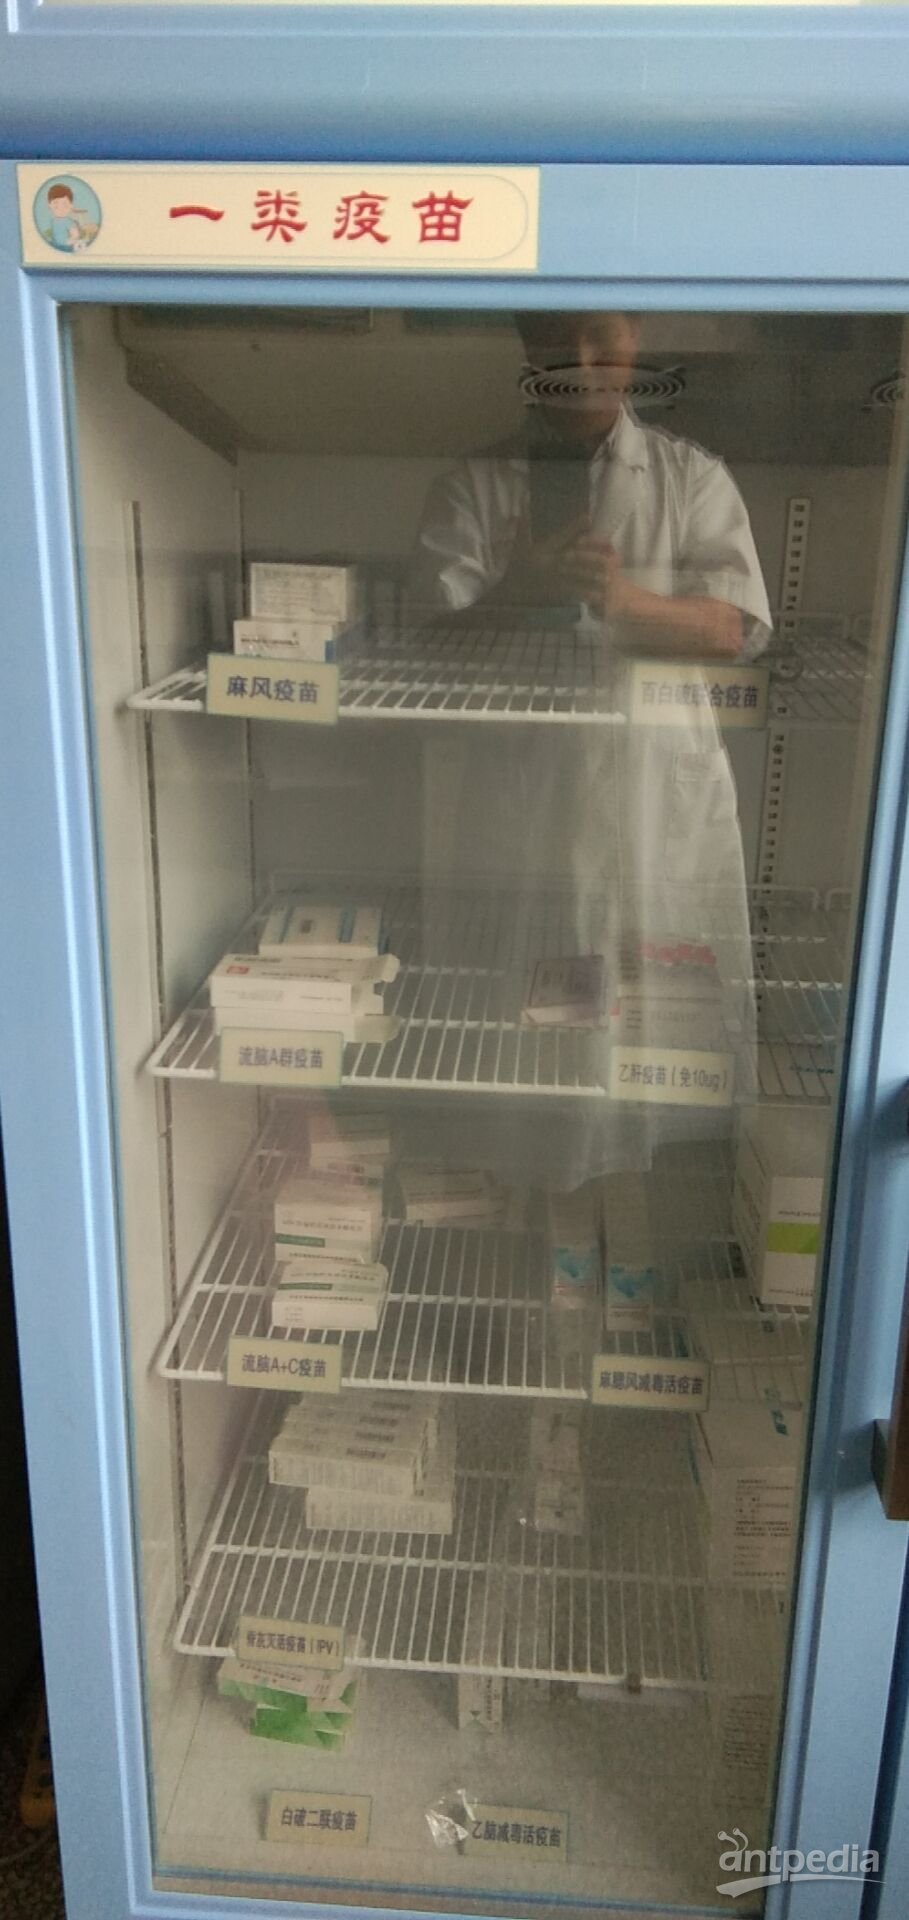 药品留样室冰箱